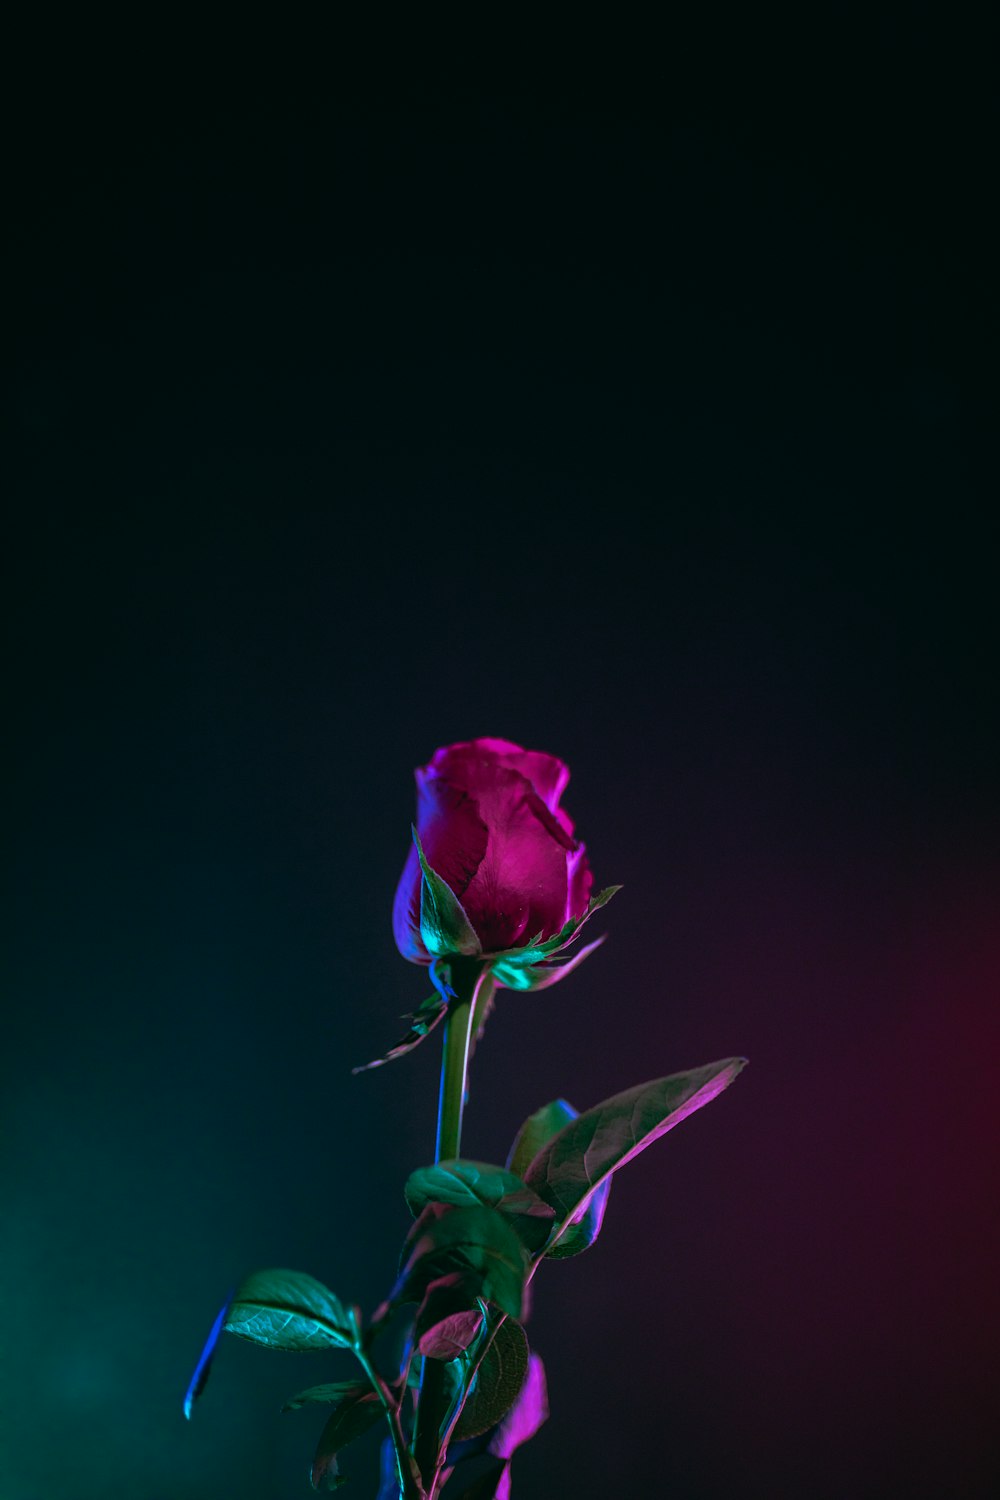 foto da flor rosa vermelha na superfície escura